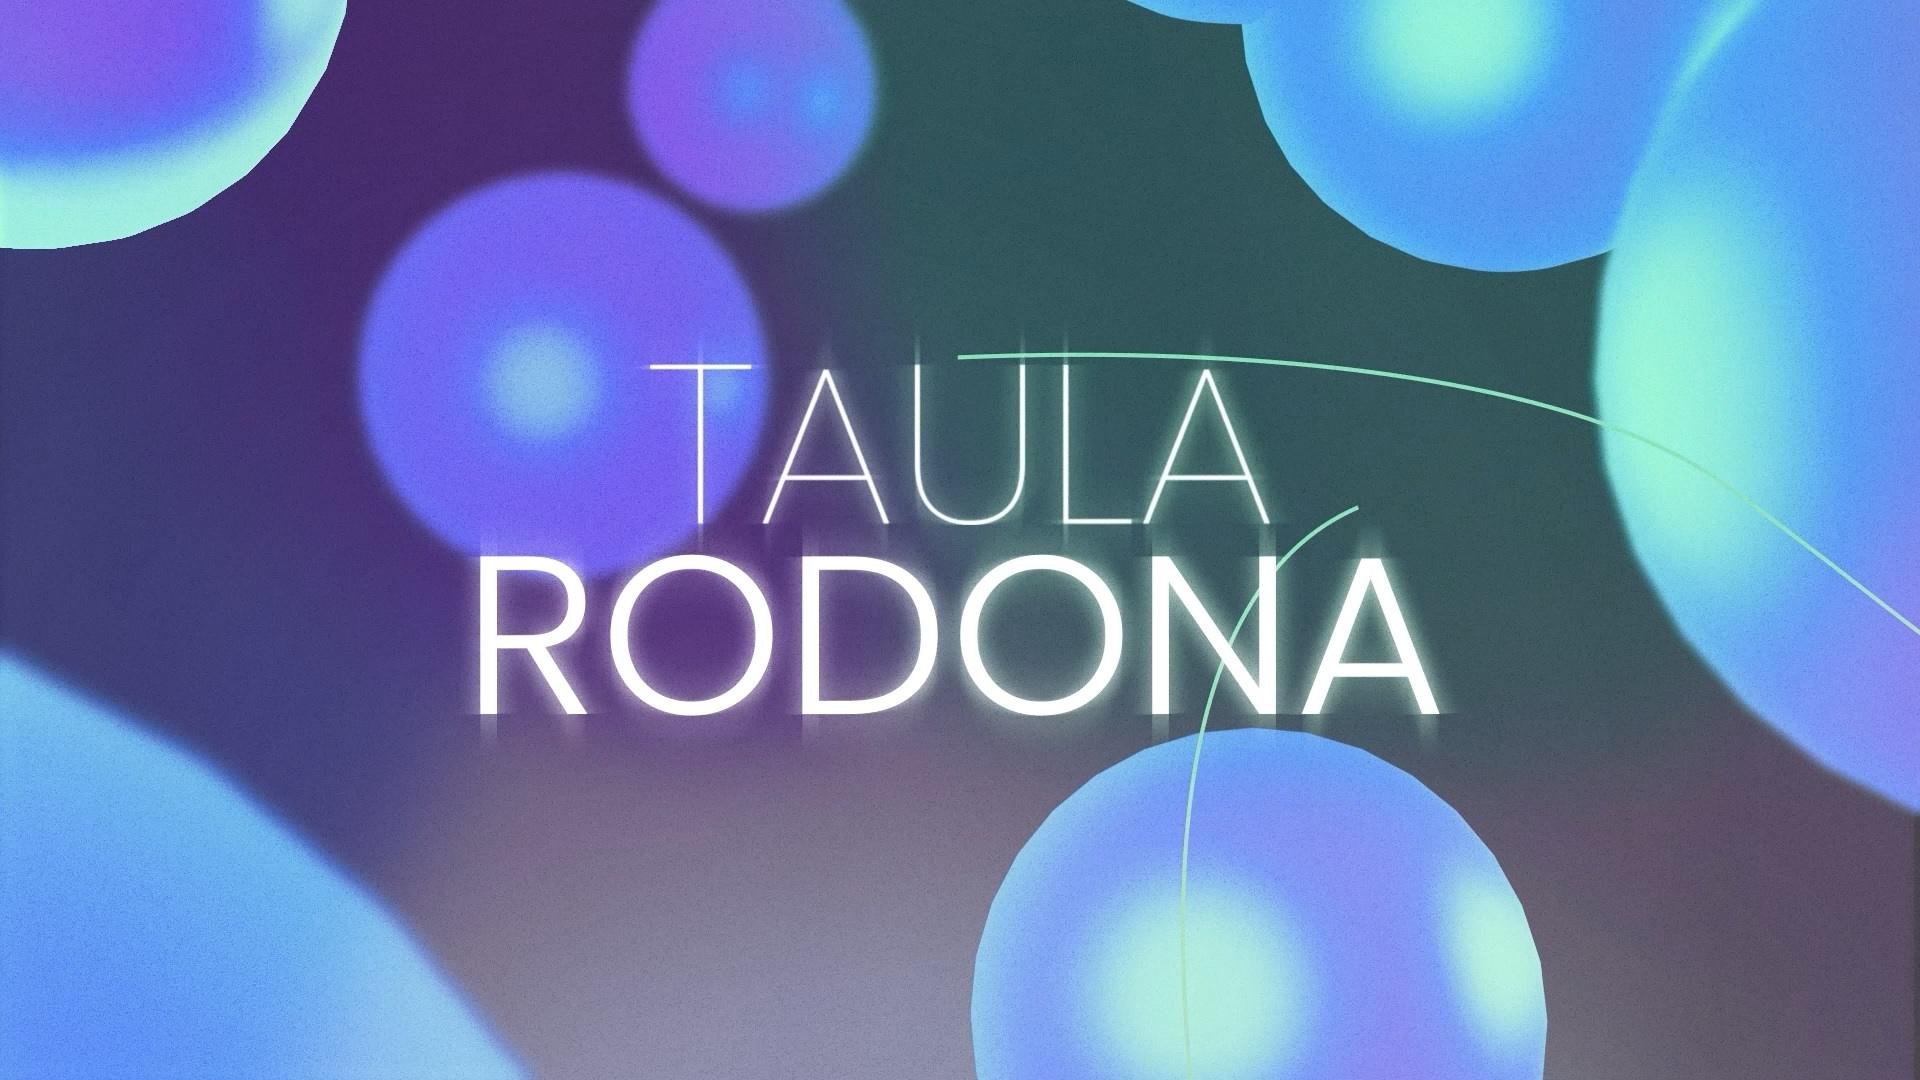 TAULA RODONA. Els joves i la política